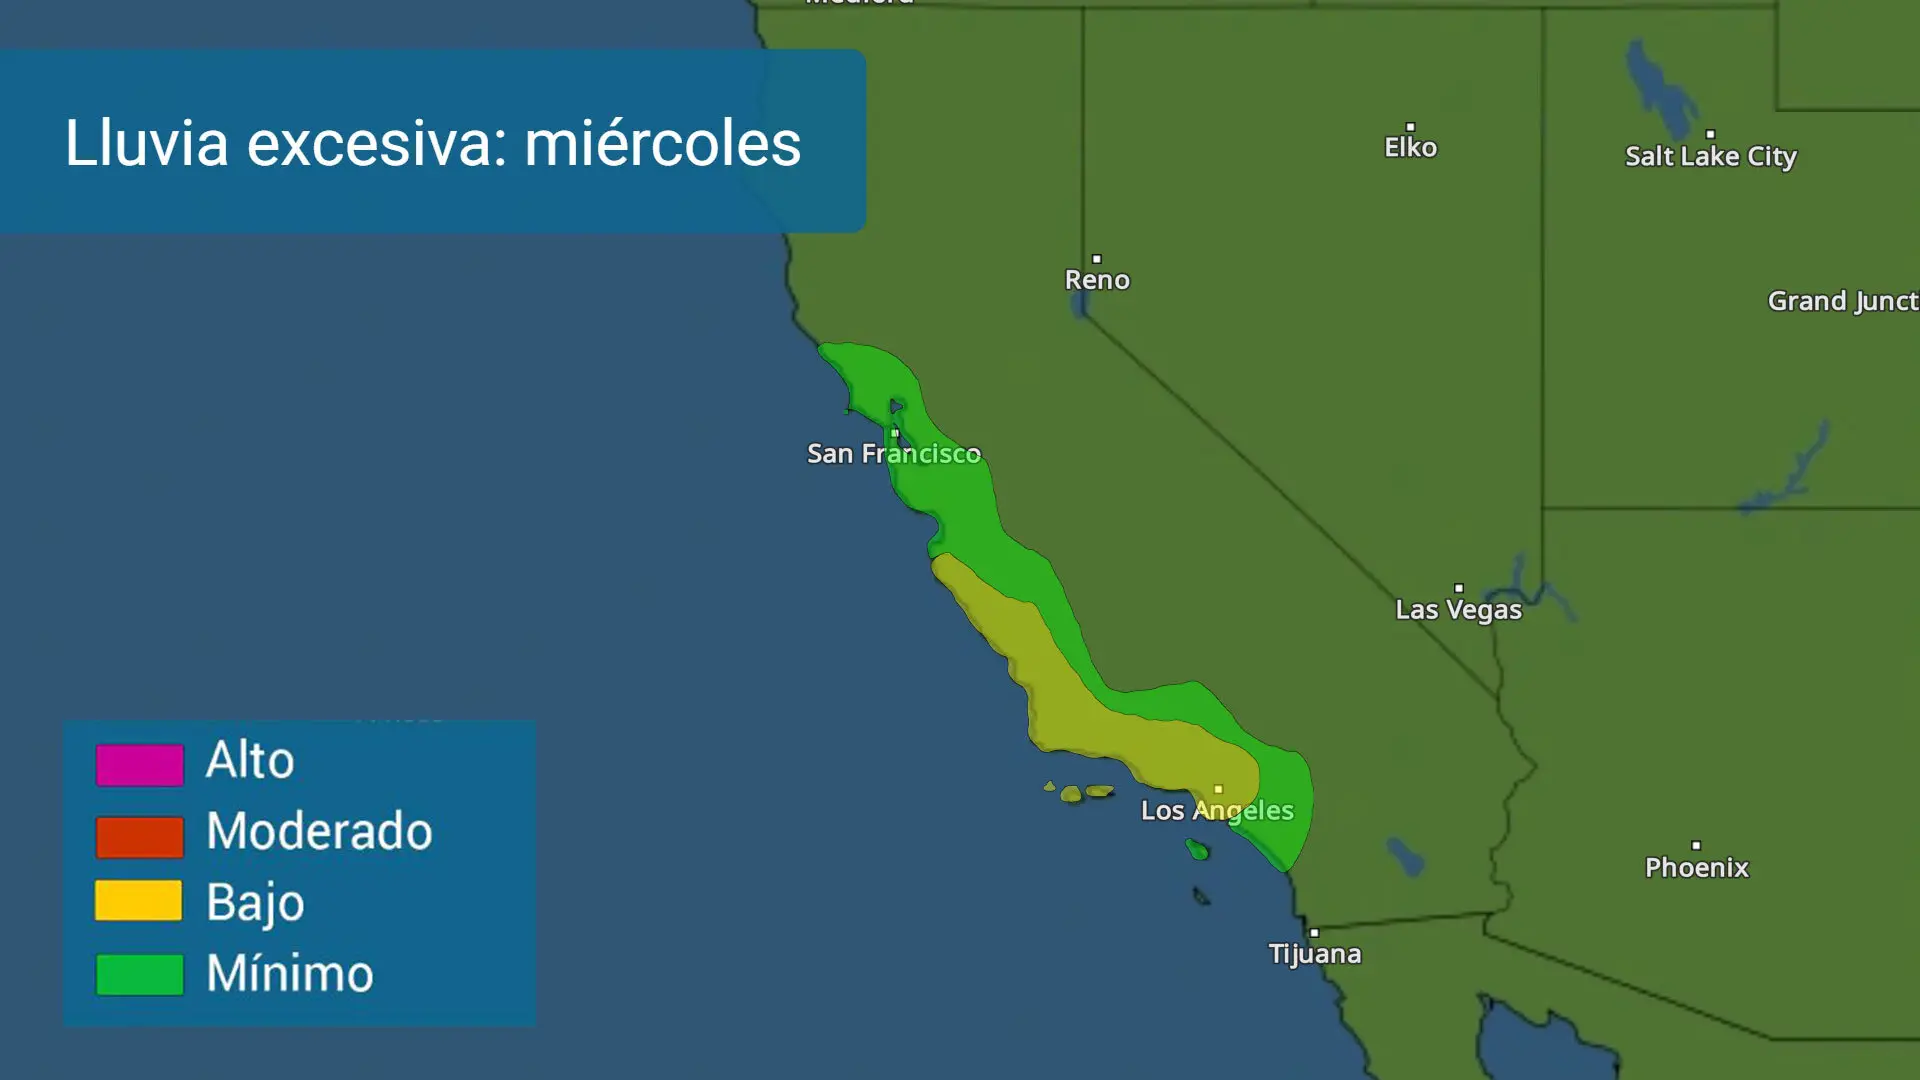 Lluvias cuantiosas e intensas el miércoles a lo largo de la costa de California. Inundaciones y deslaves serán probables. 